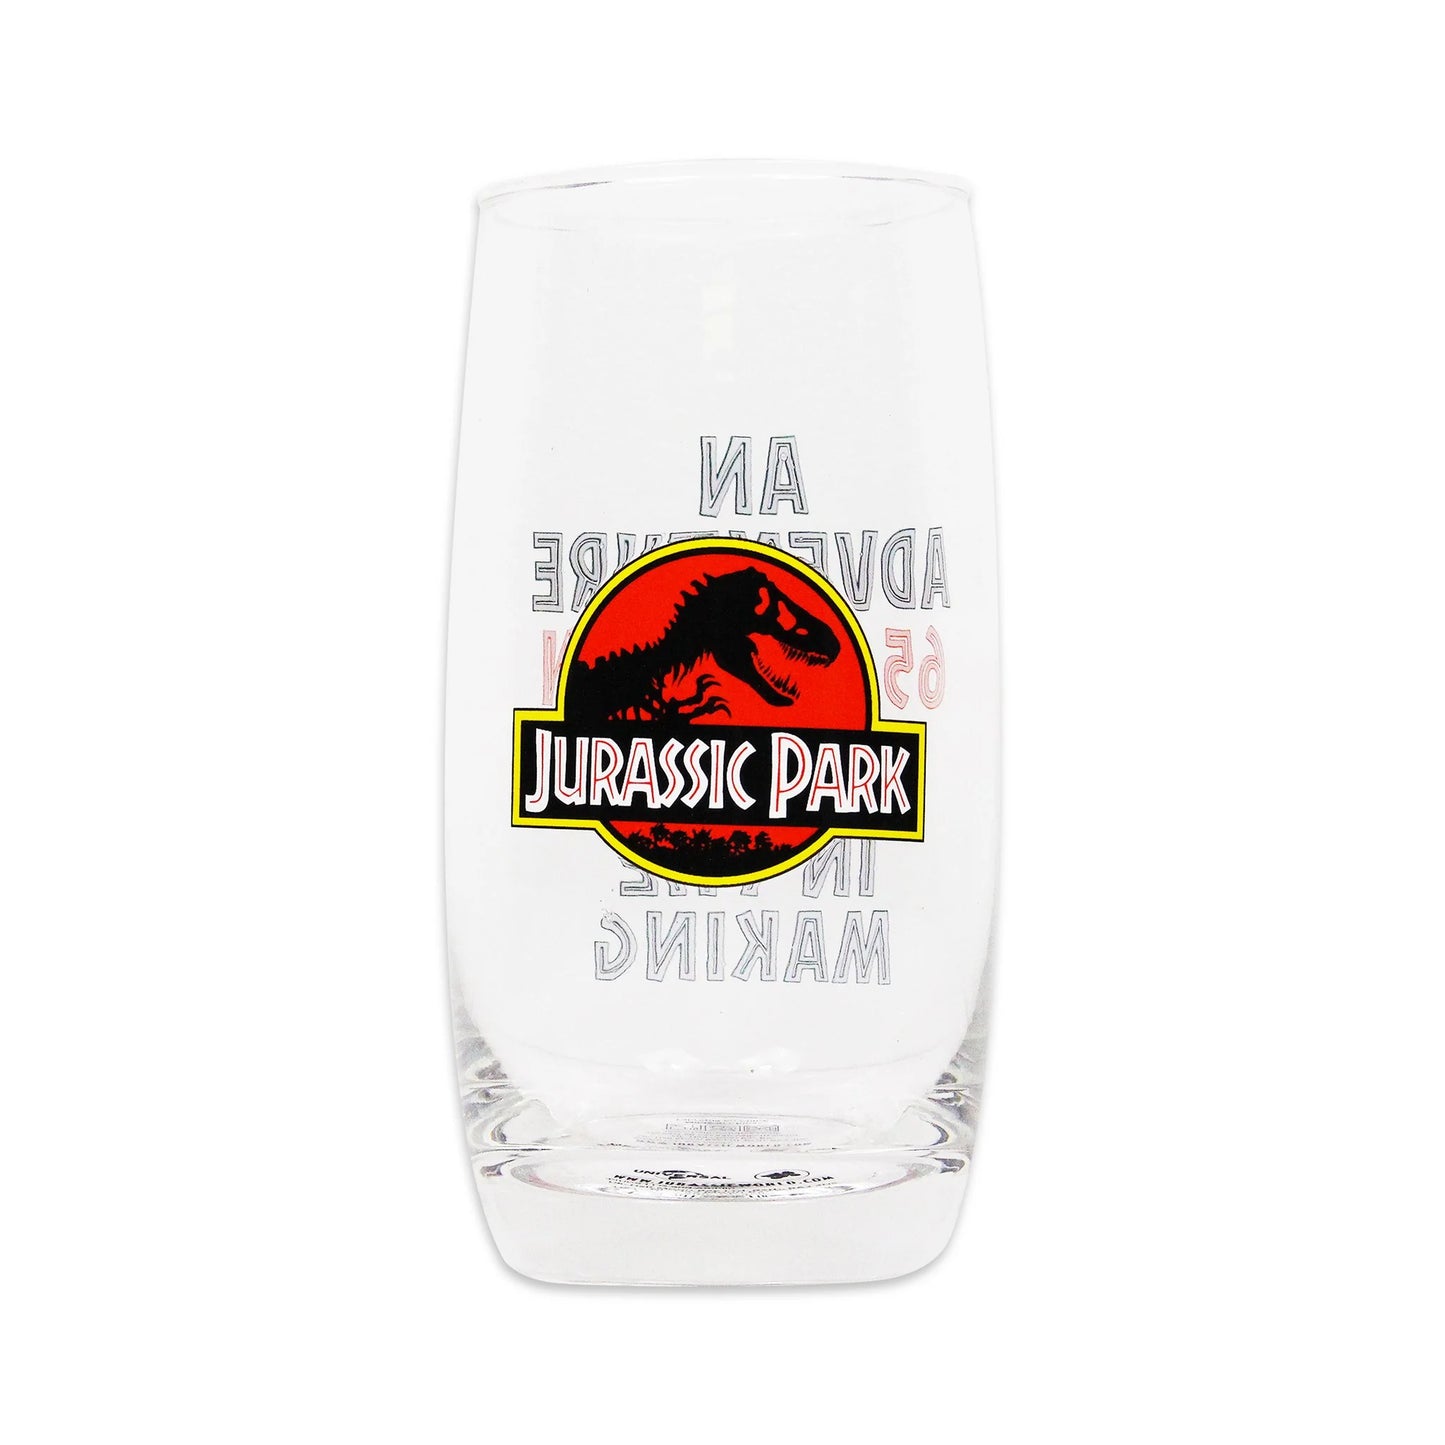 JURASSIC PARK - An Adventure Glass